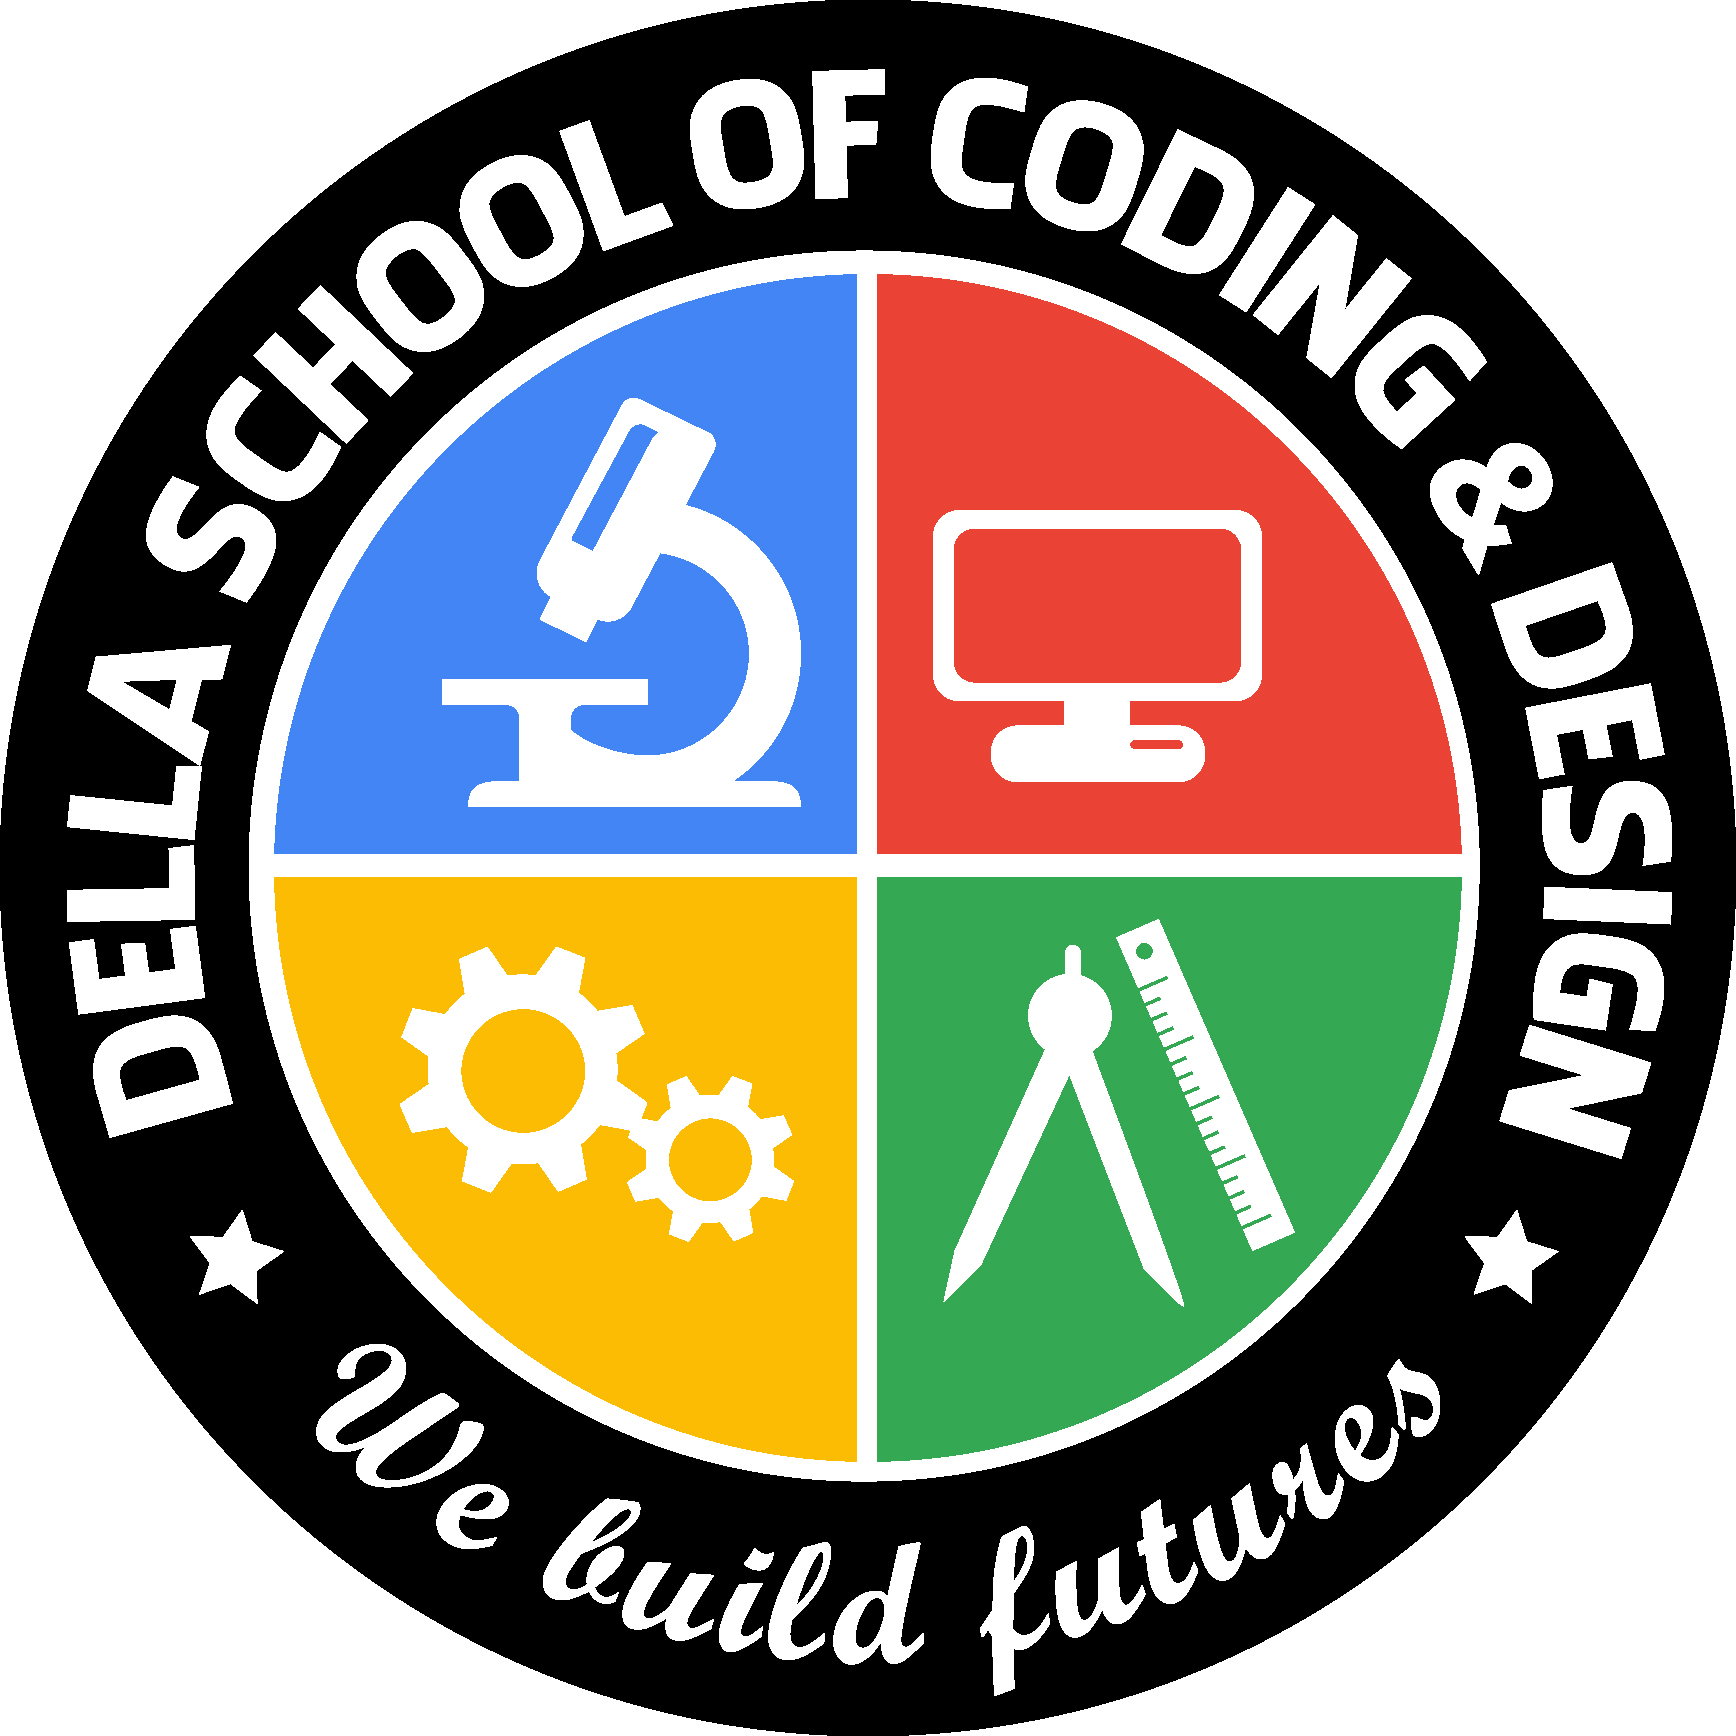 Della School of Coding & Design logo